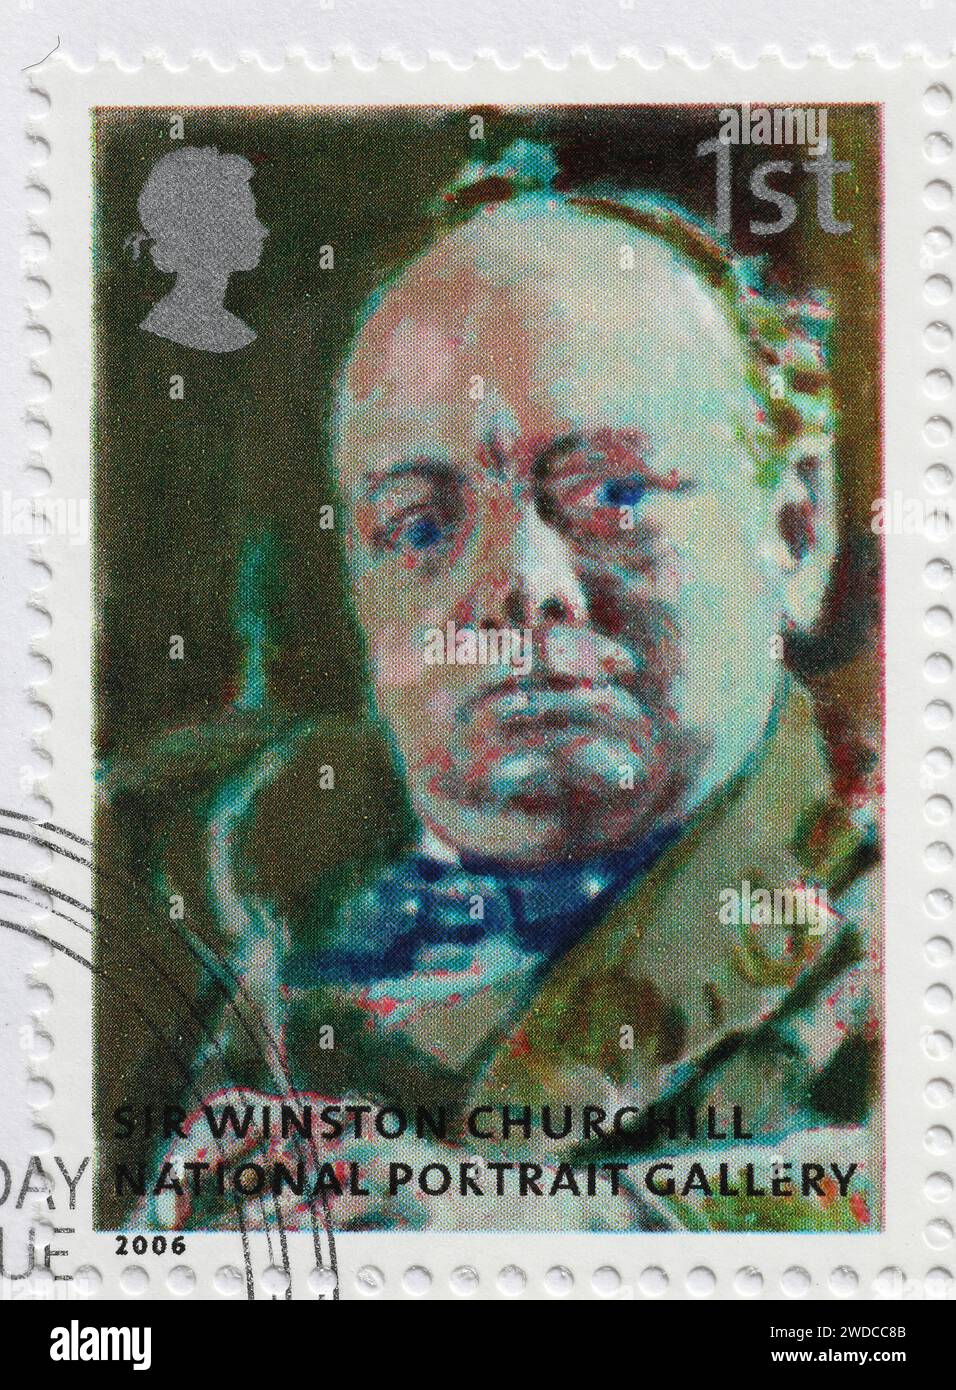 Wiston Churchill von der National Portrait Gallery auf Briefmarken Stockfoto